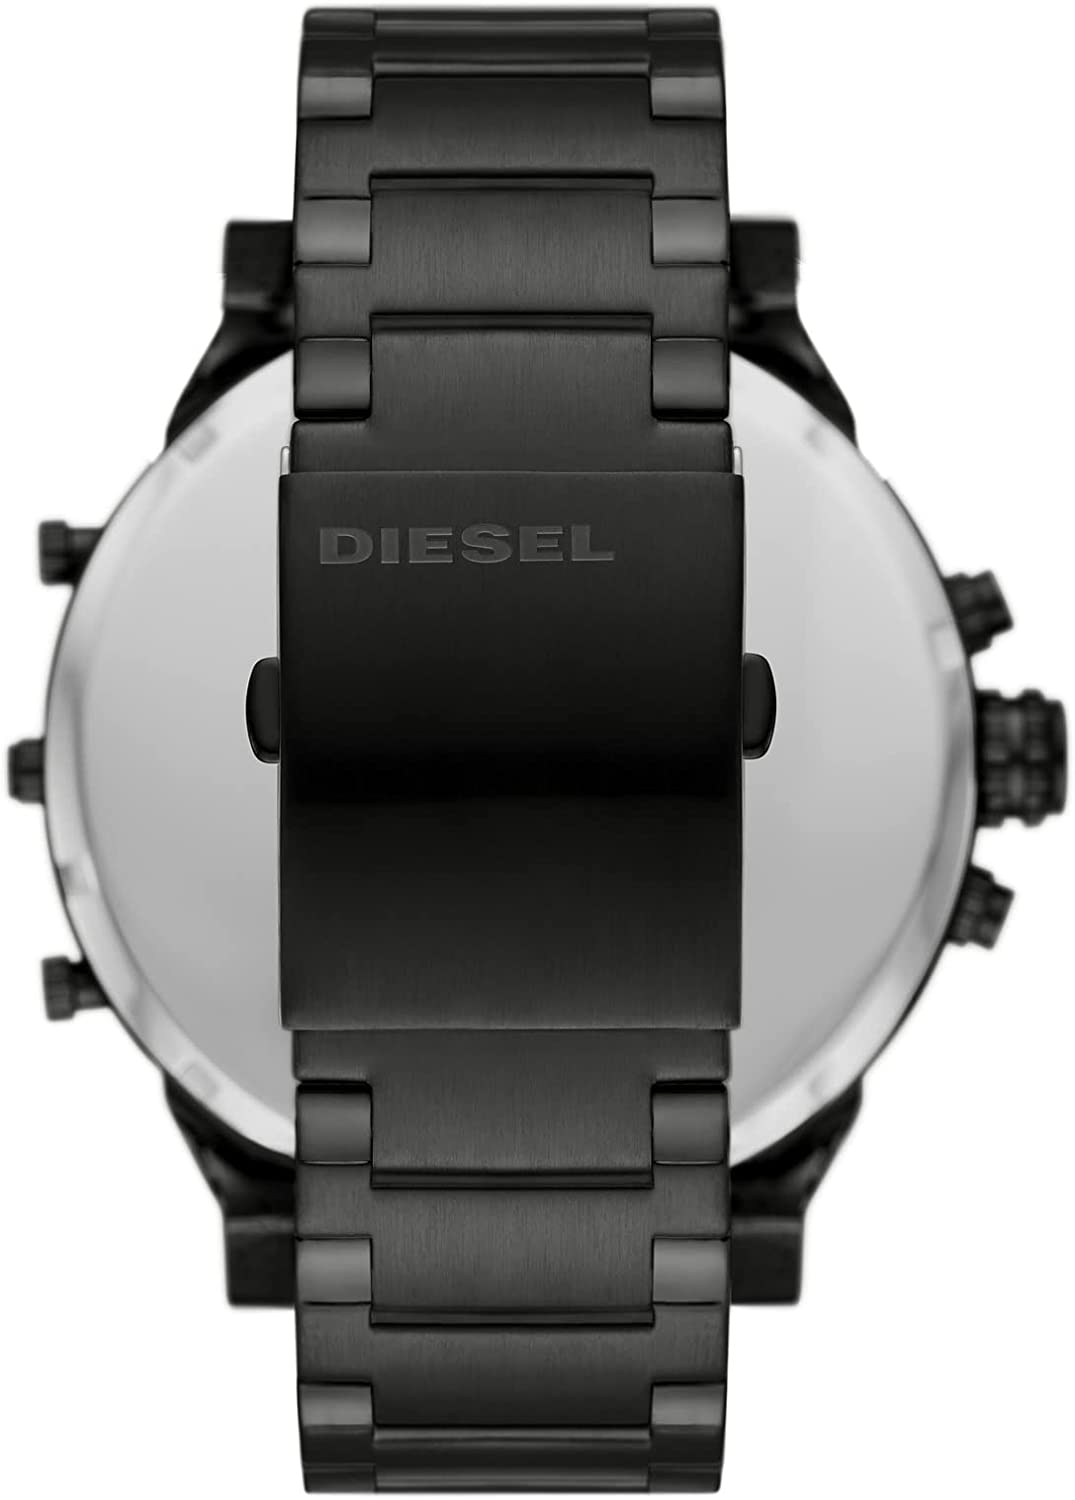 Diesel Mr. Daddy 2.0 Multi Movement Stainless Steel Watch DZ7460 - Big Daddy Watches #3